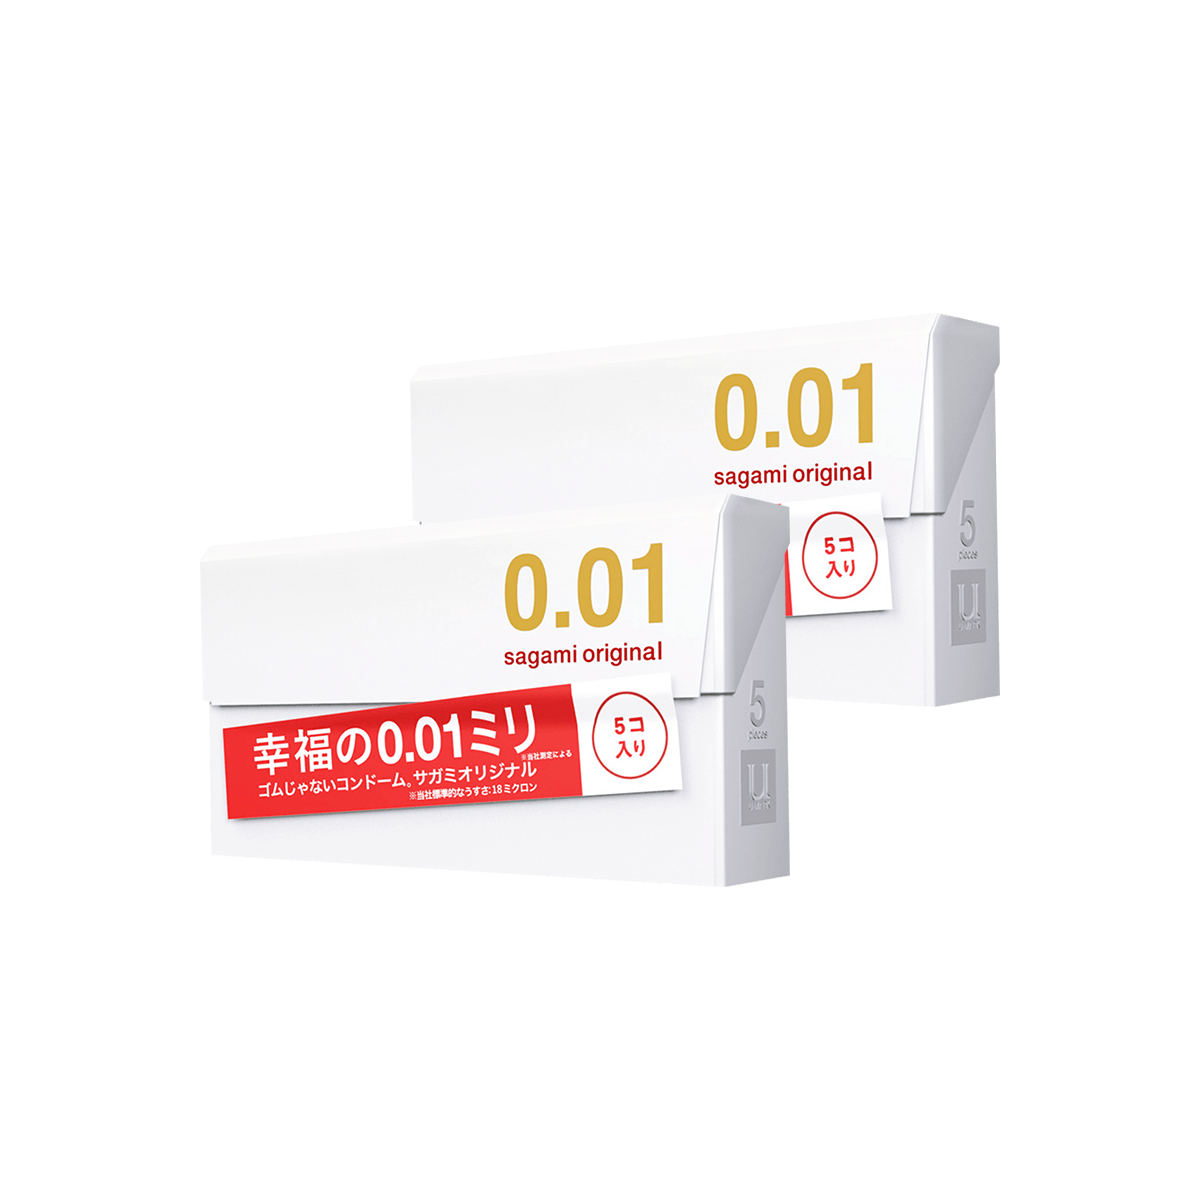 【两盒装】日本SAGAMI 幸福001 超薄安全避孕套 5片入*2 怎么样 - 亚米网